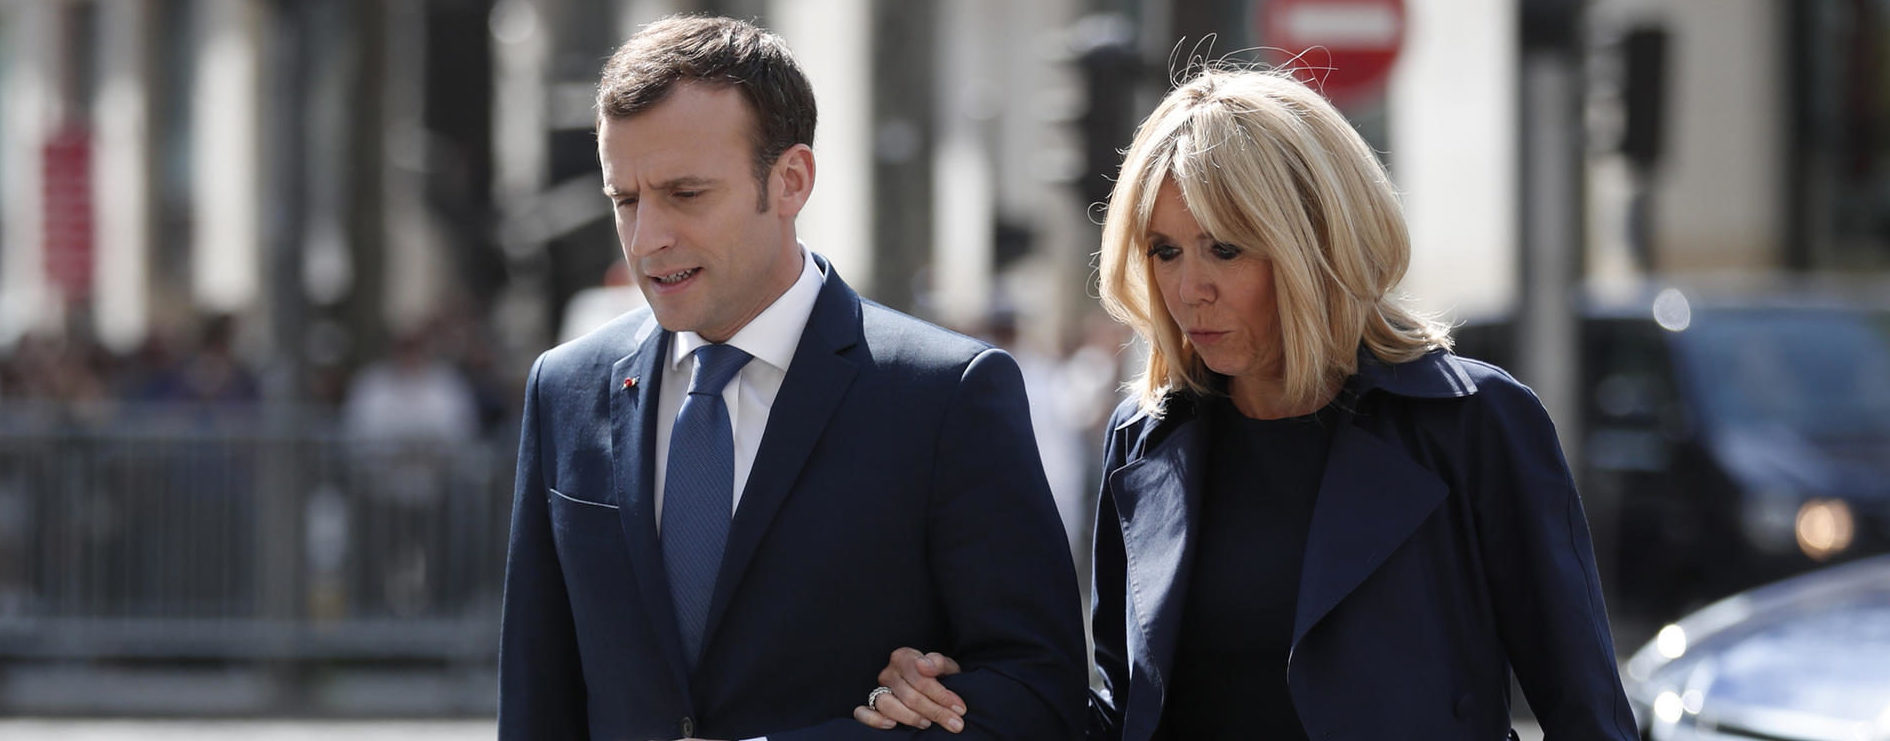 Quand Brigitte Macron hausse le ton contre Emmanuel Macron